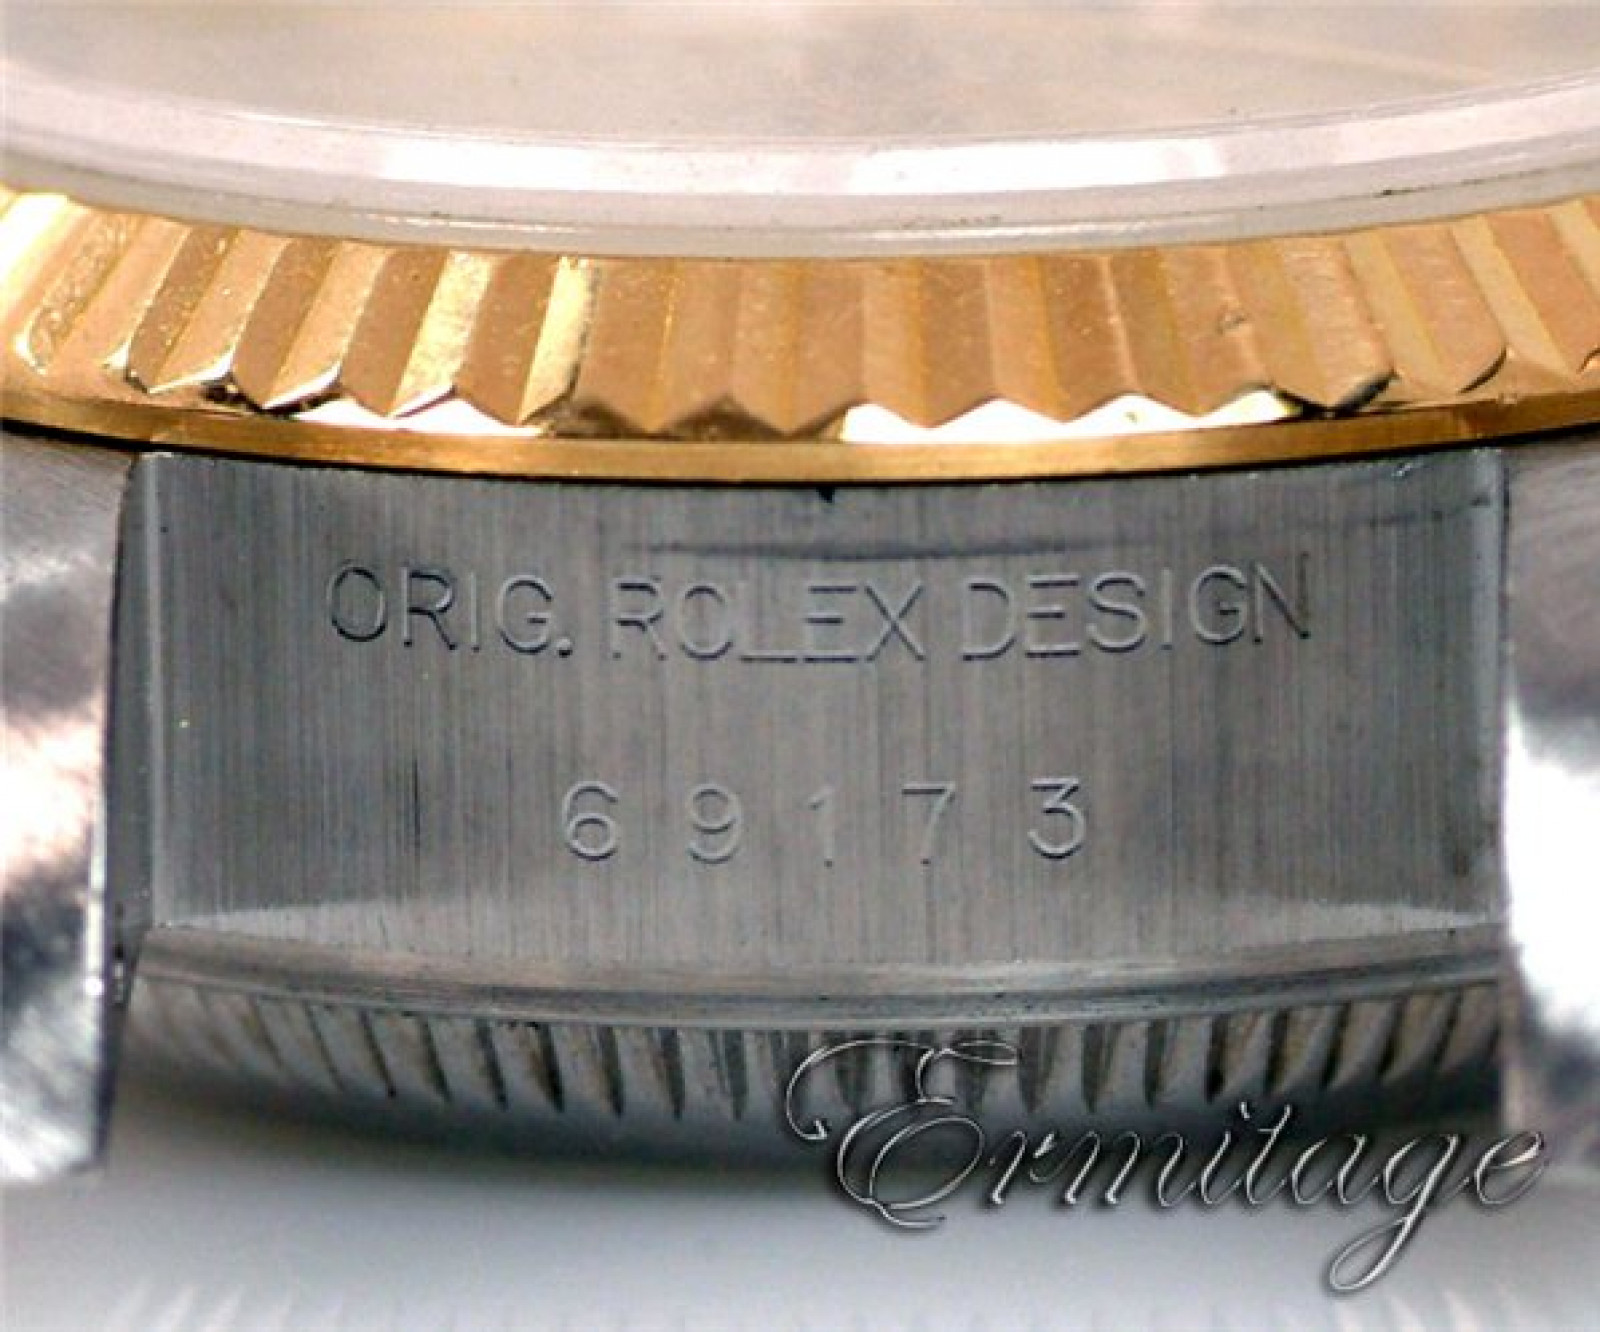 Rolex Datejust 69173 Gold & Steel 1996